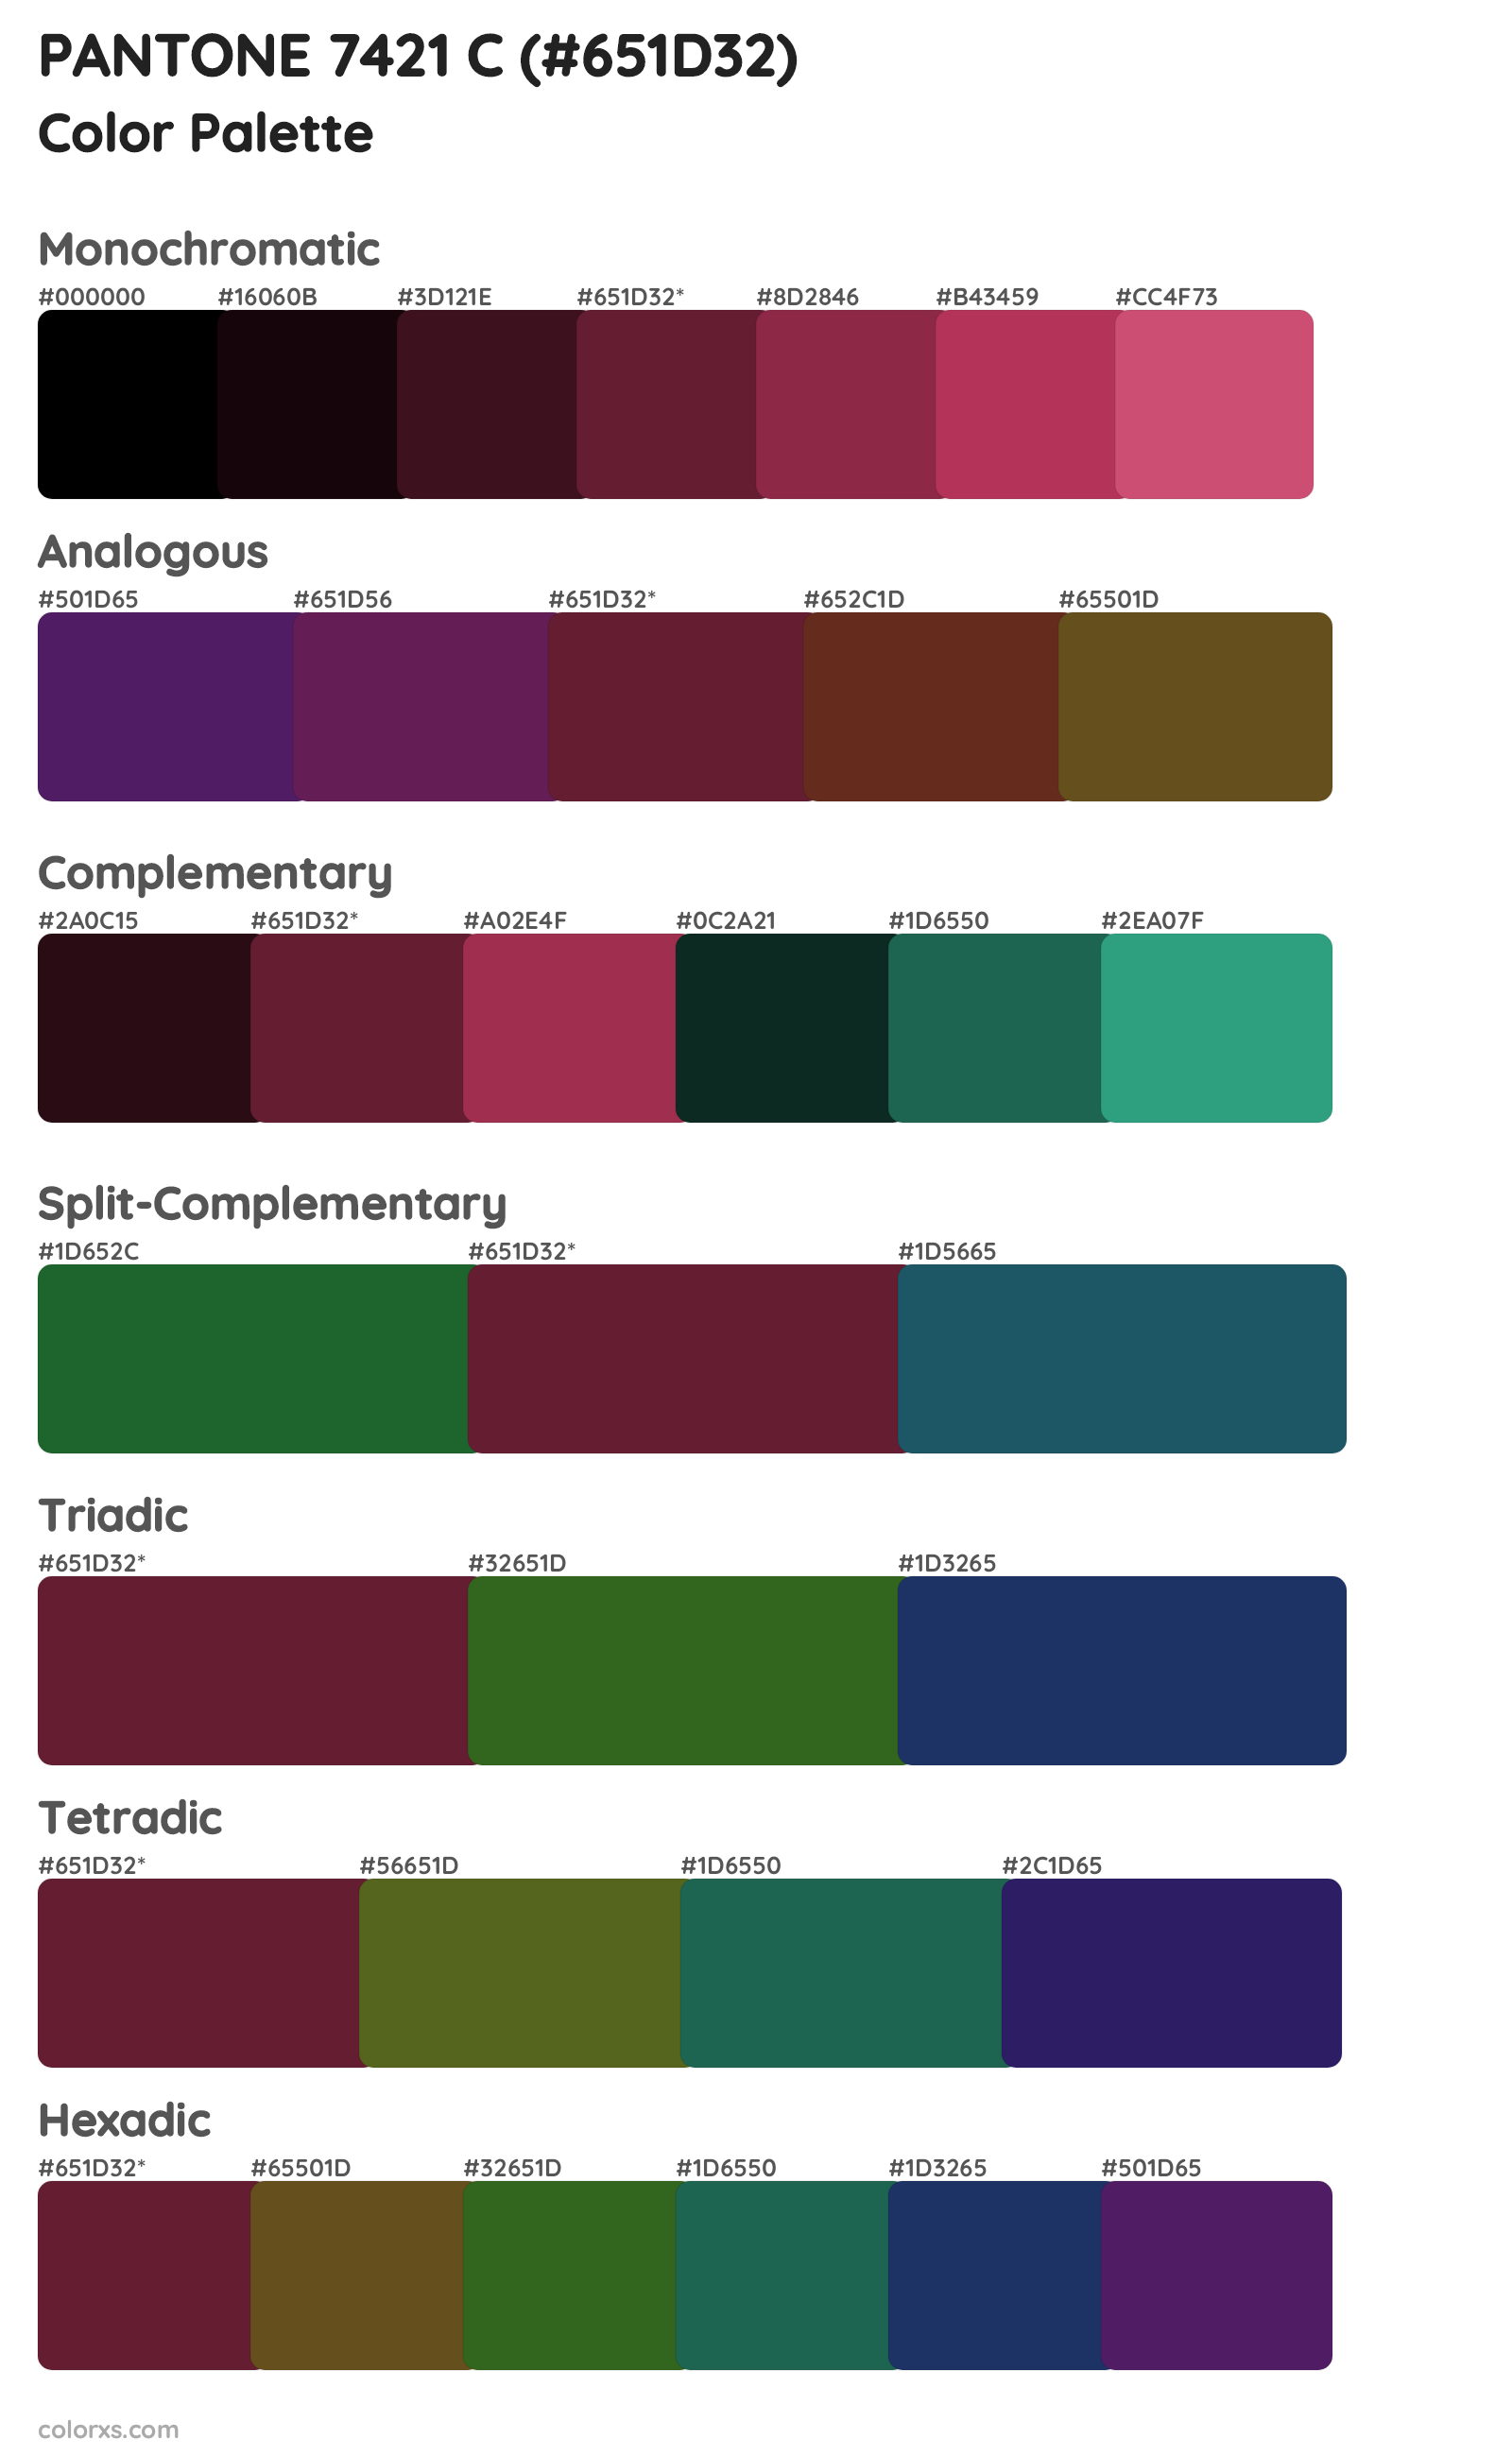 PANTONE 7421 C Color Scheme Palettes